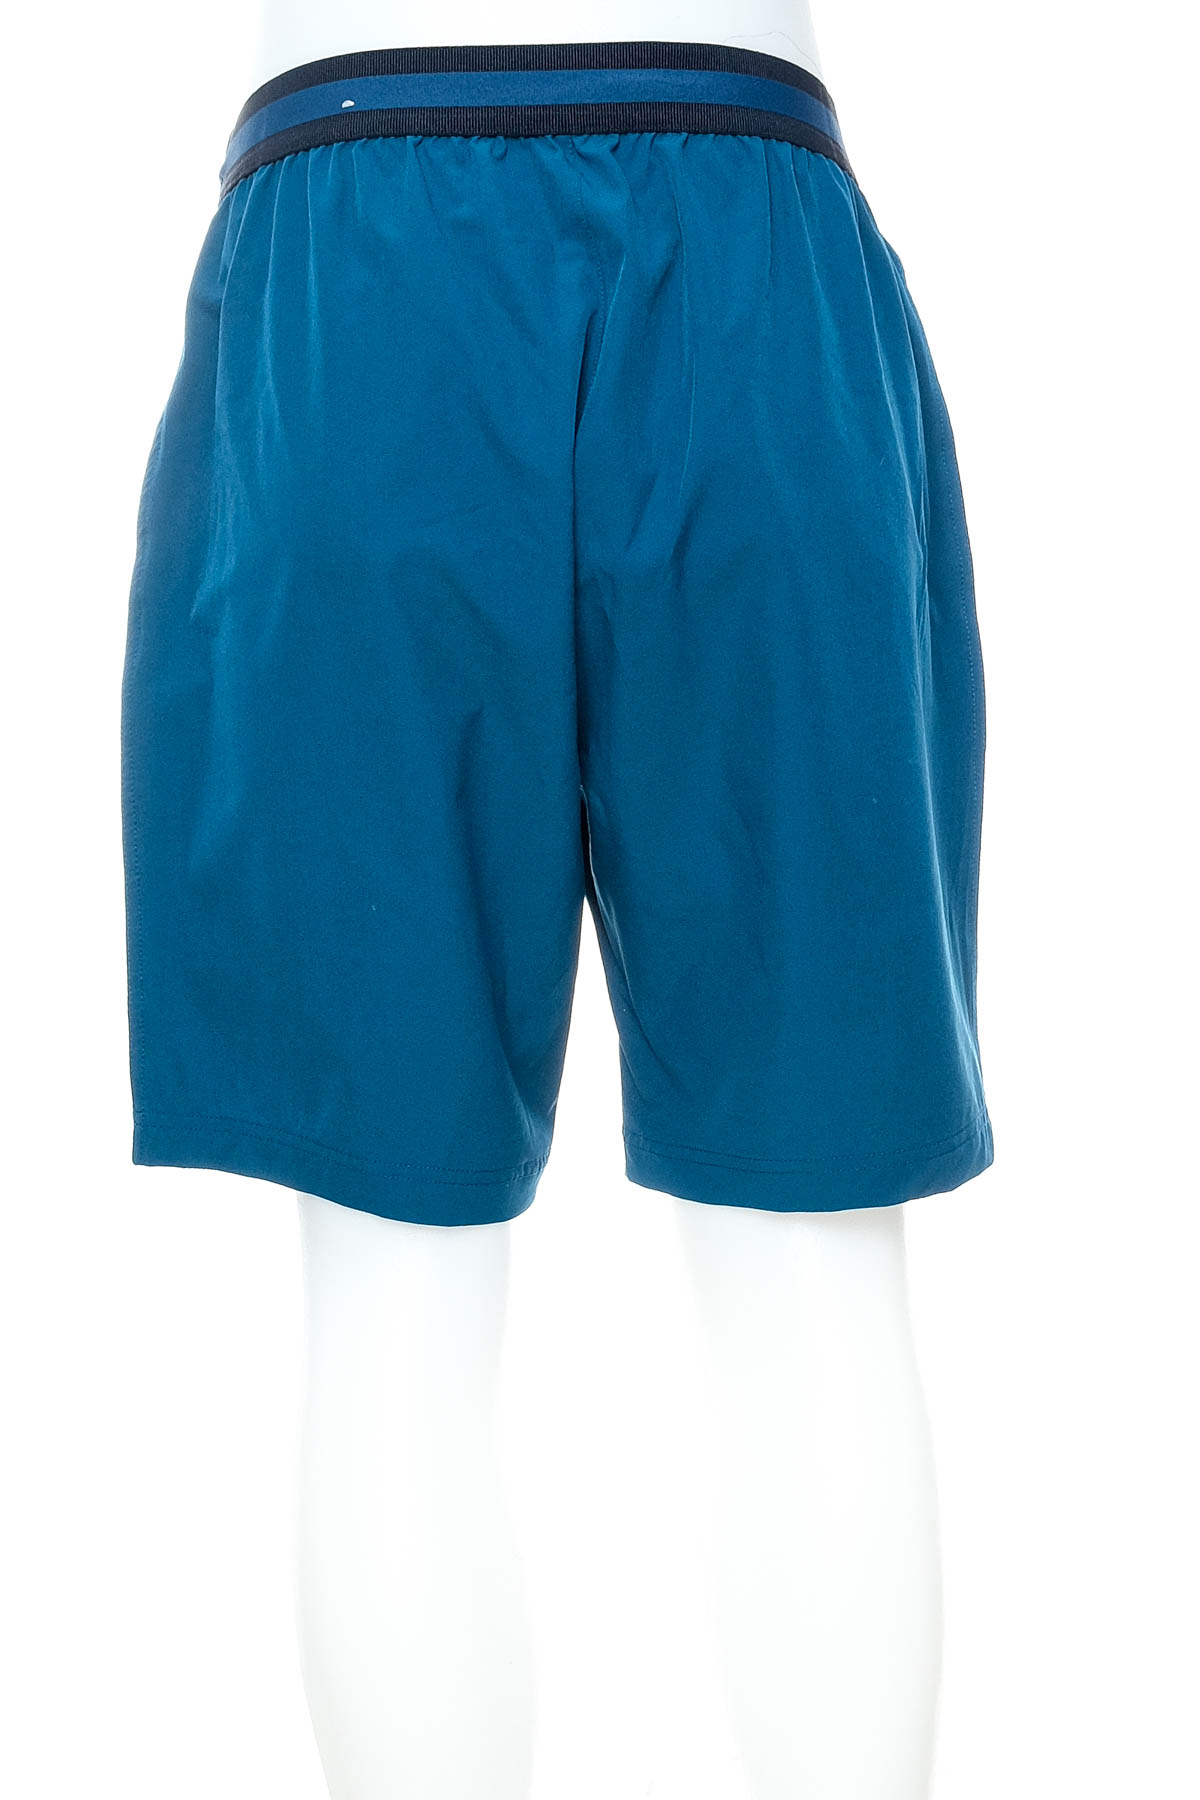 Men's shorts - JOY - 1